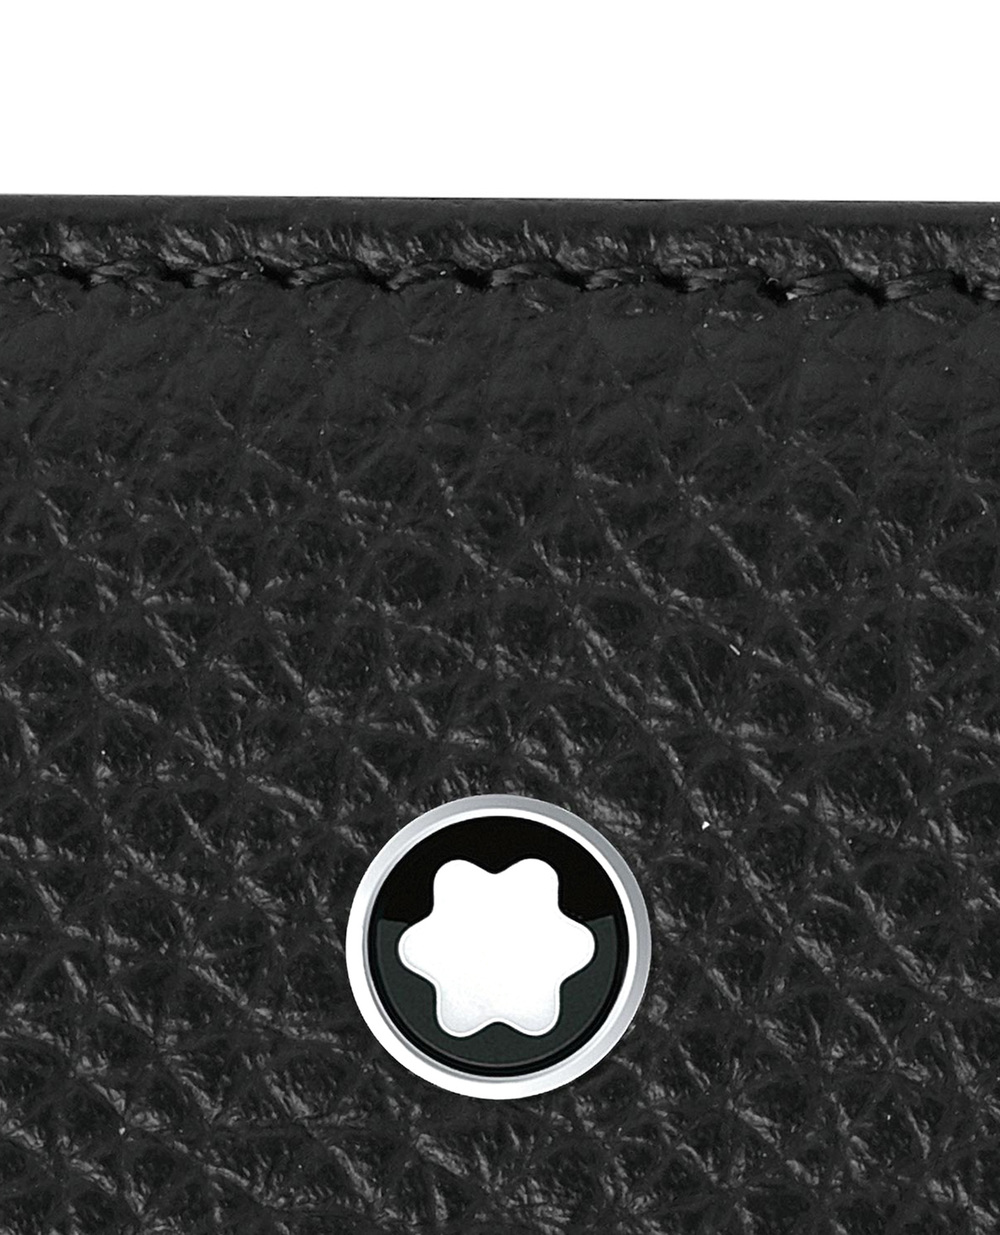 Бумажник Montblanc Soft Grain Montblanc 126255, черный цвет • Купить в интернет-магазине Kameron